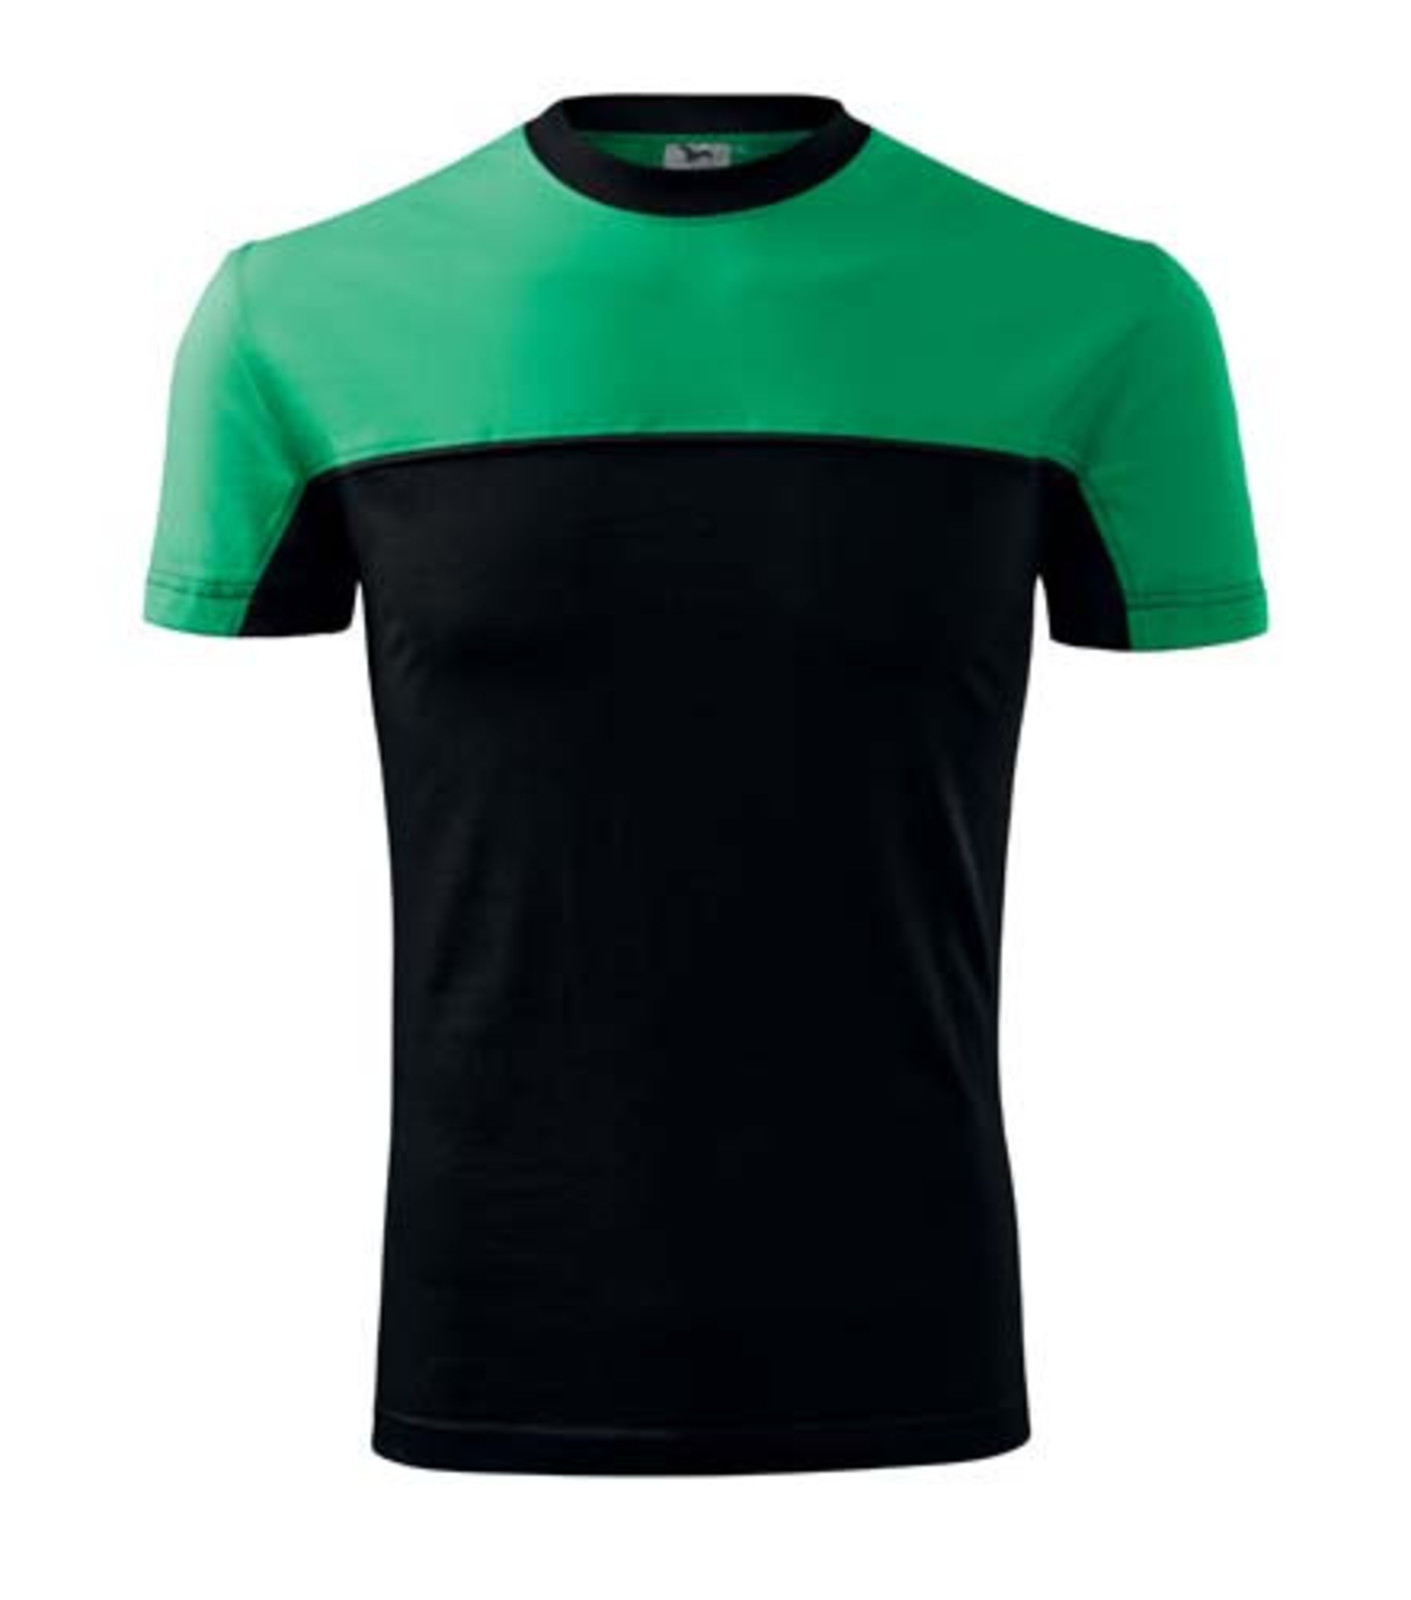 Unisex tričko Rimeck Colormix 109 - veľkosť: 3XL, farba: zelená/čierna